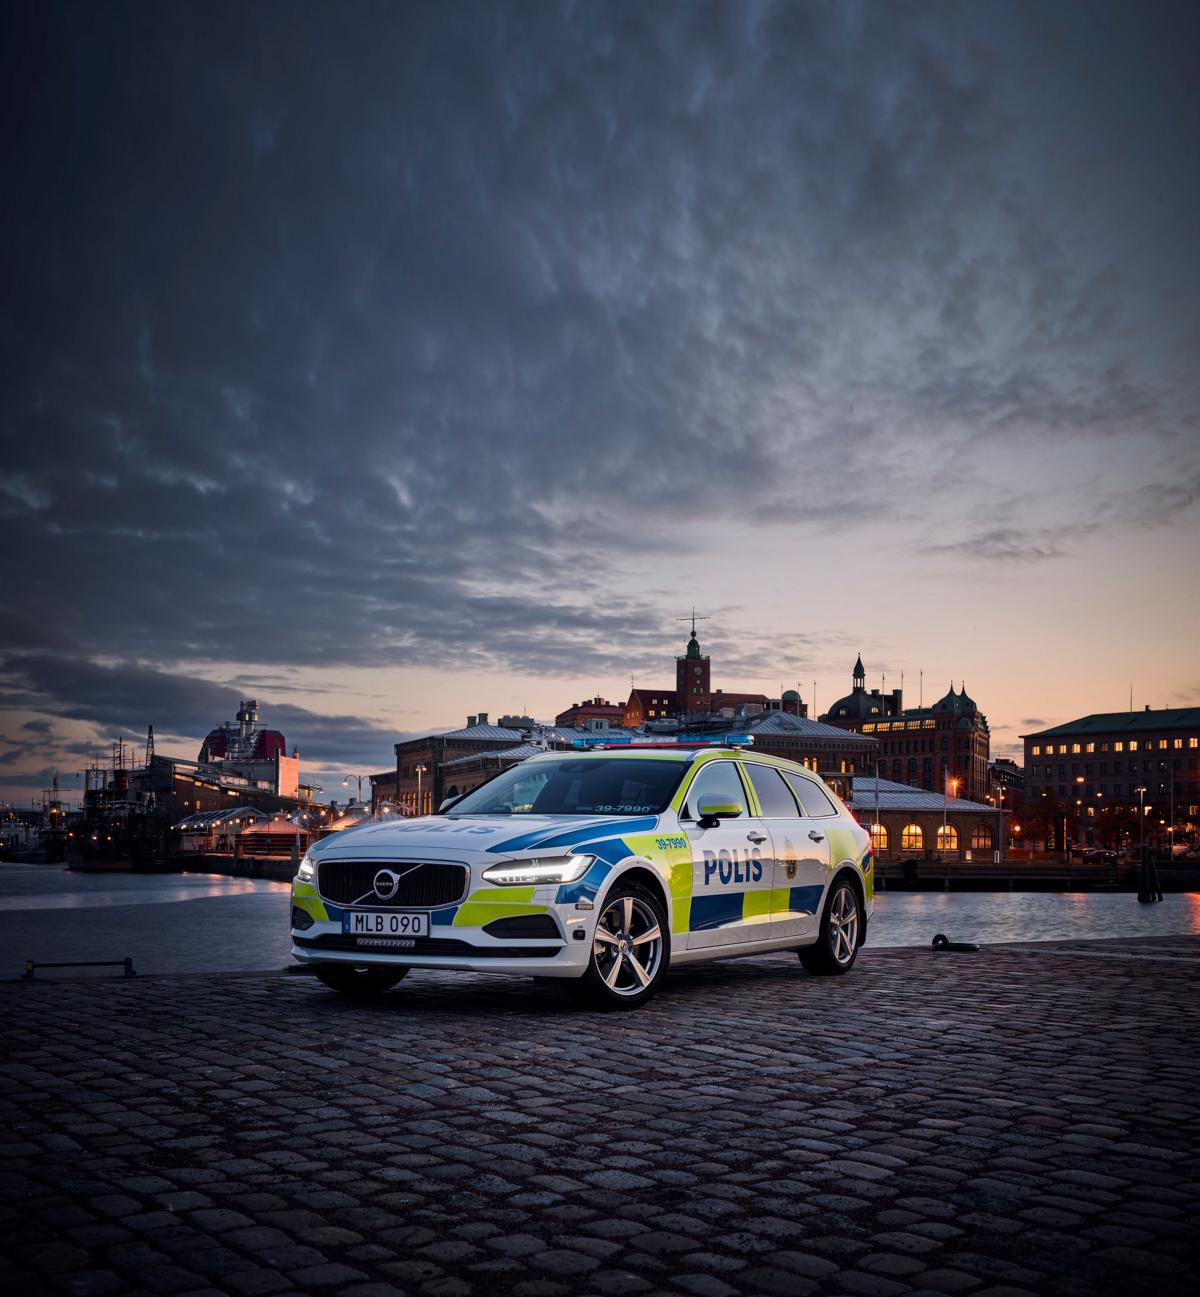 K1600 201331 Volvo V90 as a police car